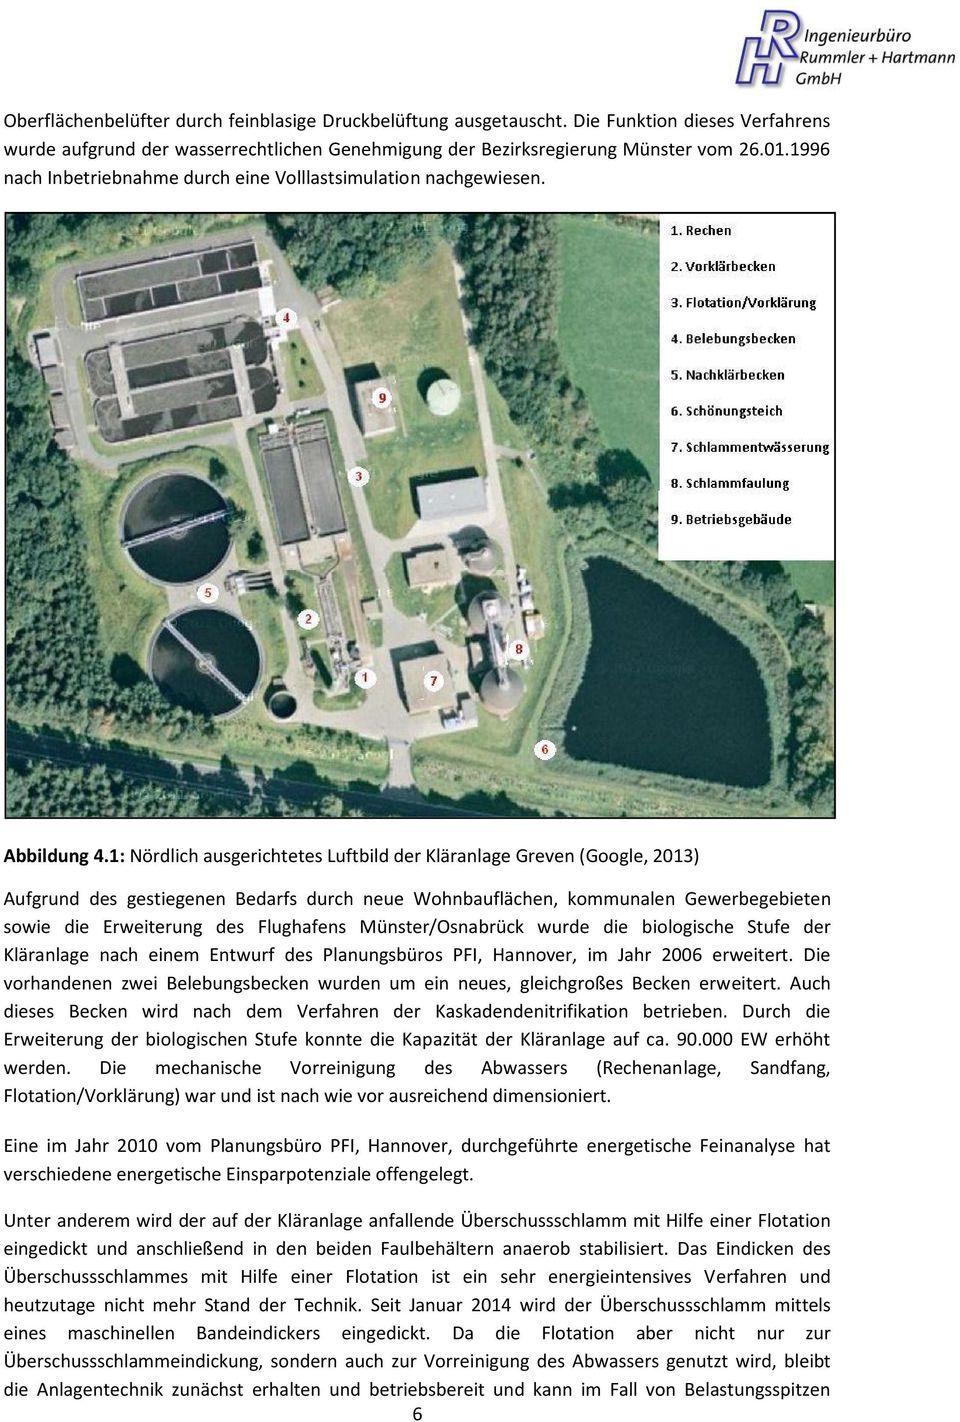 1: Nördlich ausgerichtetes Luftbild der Kläranlage Greven (Google, 2013) Aufgrund des gestiegenen Bedarfs durch neue Wohnbauflächen, kommunalen Gewerbegebieten sowie die Erweiterung des Flughafens